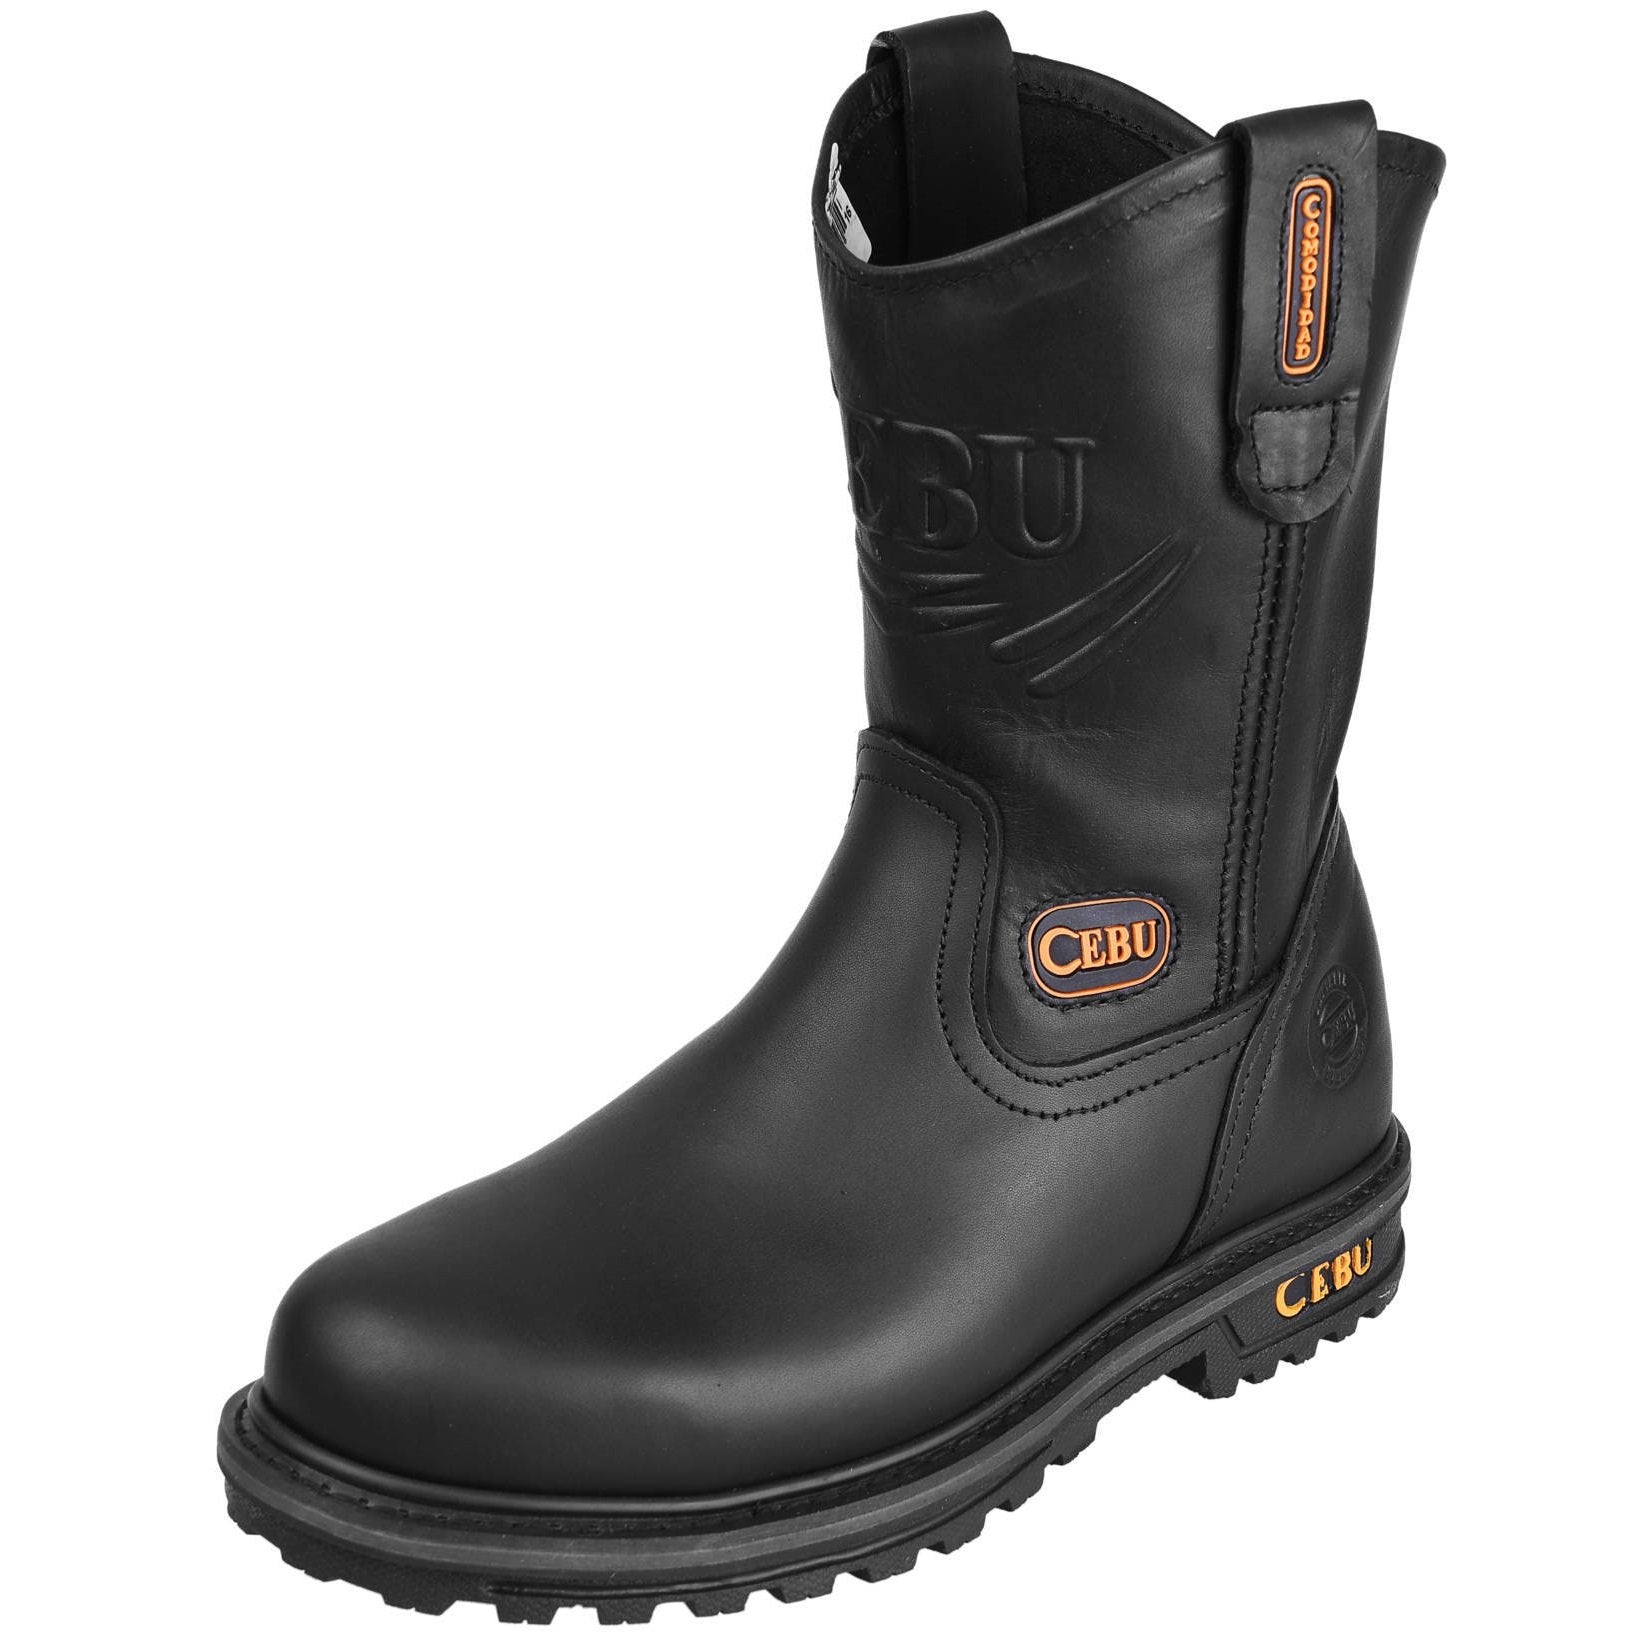 Men's Work Boots - Steel Toe & Heavy Duty - Black Work Boots - Cebu - Pull On Work Boots - Black Wellington Work Boots